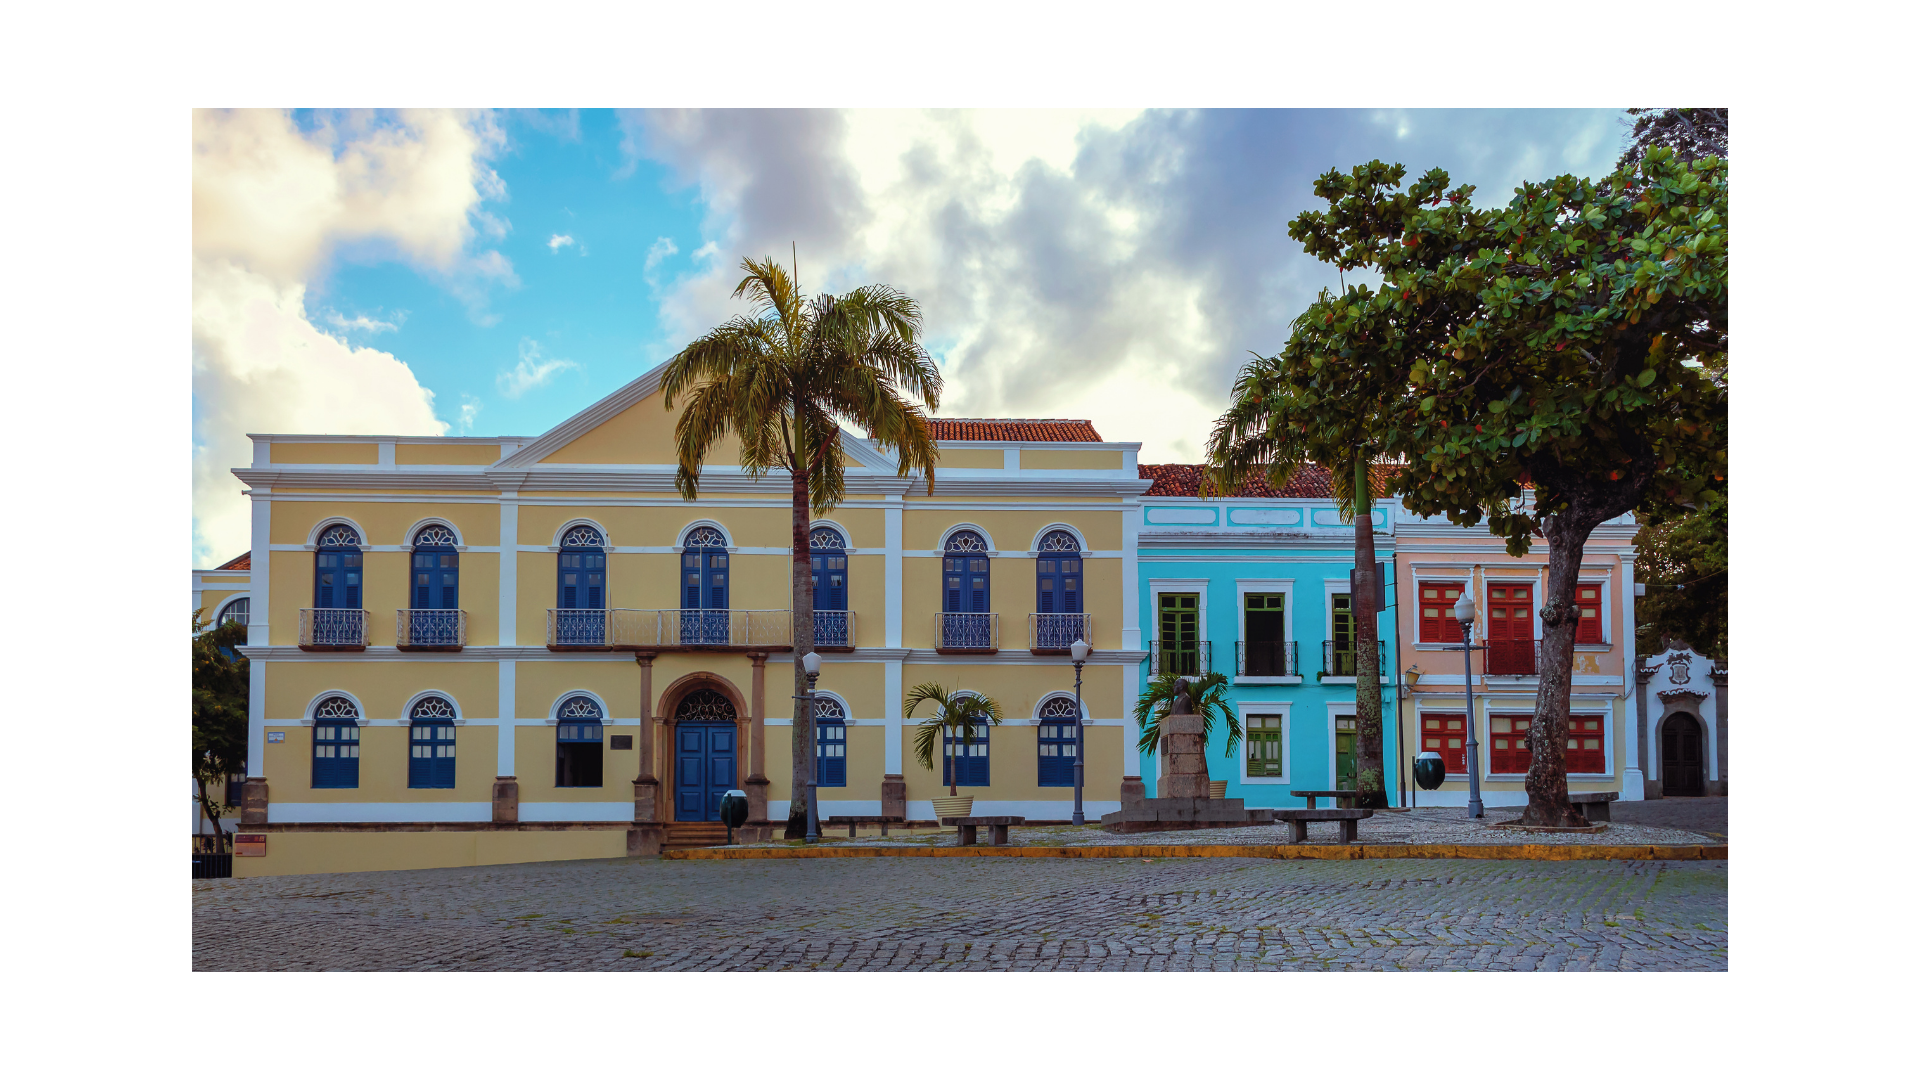 Imagem de uma praça com prédios históricos